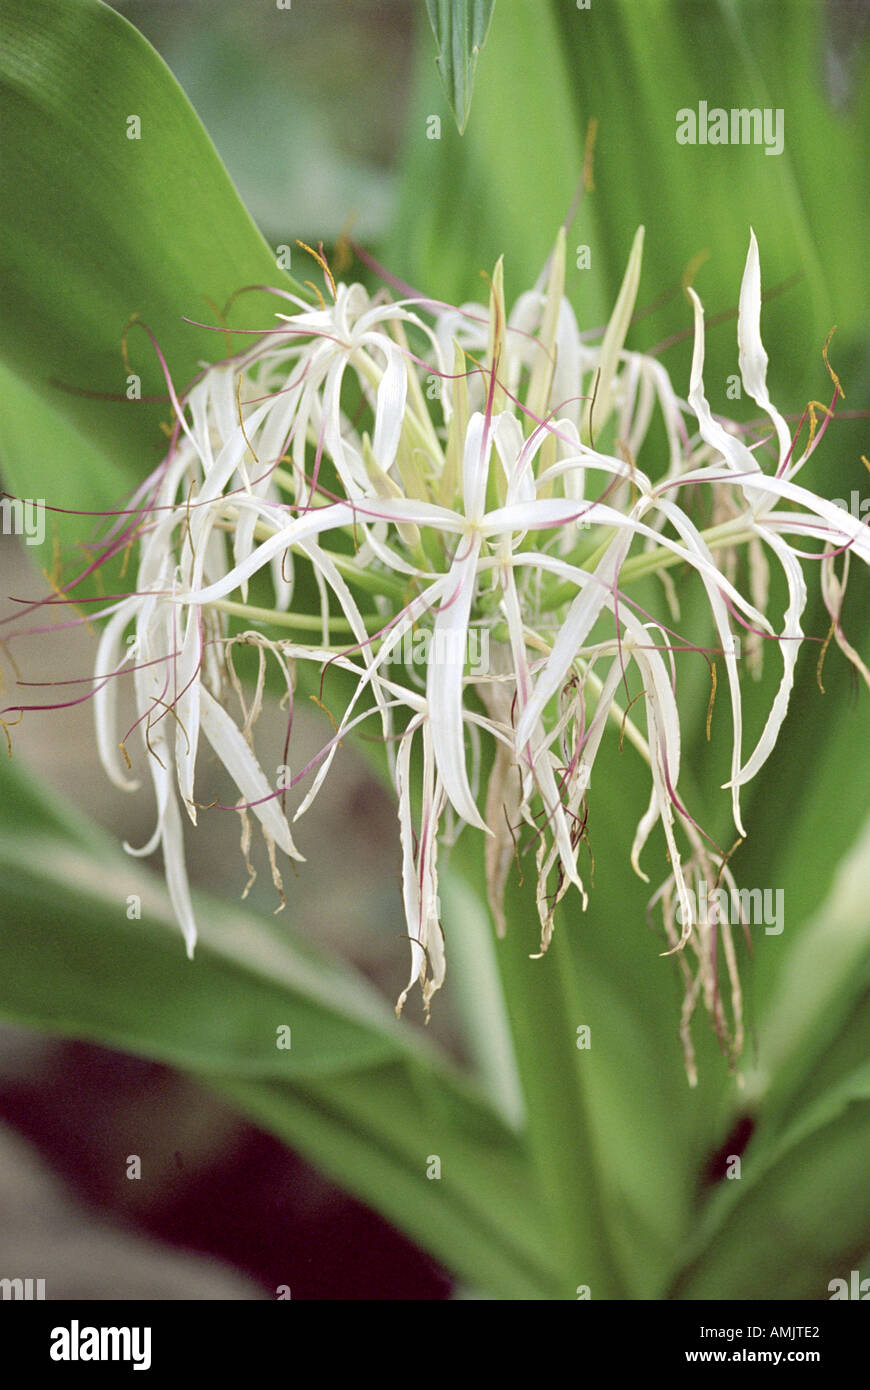 Riesige Spinne Lilie Crinum Asiaticum Amaryllisgewächse.  Ryukyu-Inseln, China, Hong Kong, Indien und Japan. Stockfoto